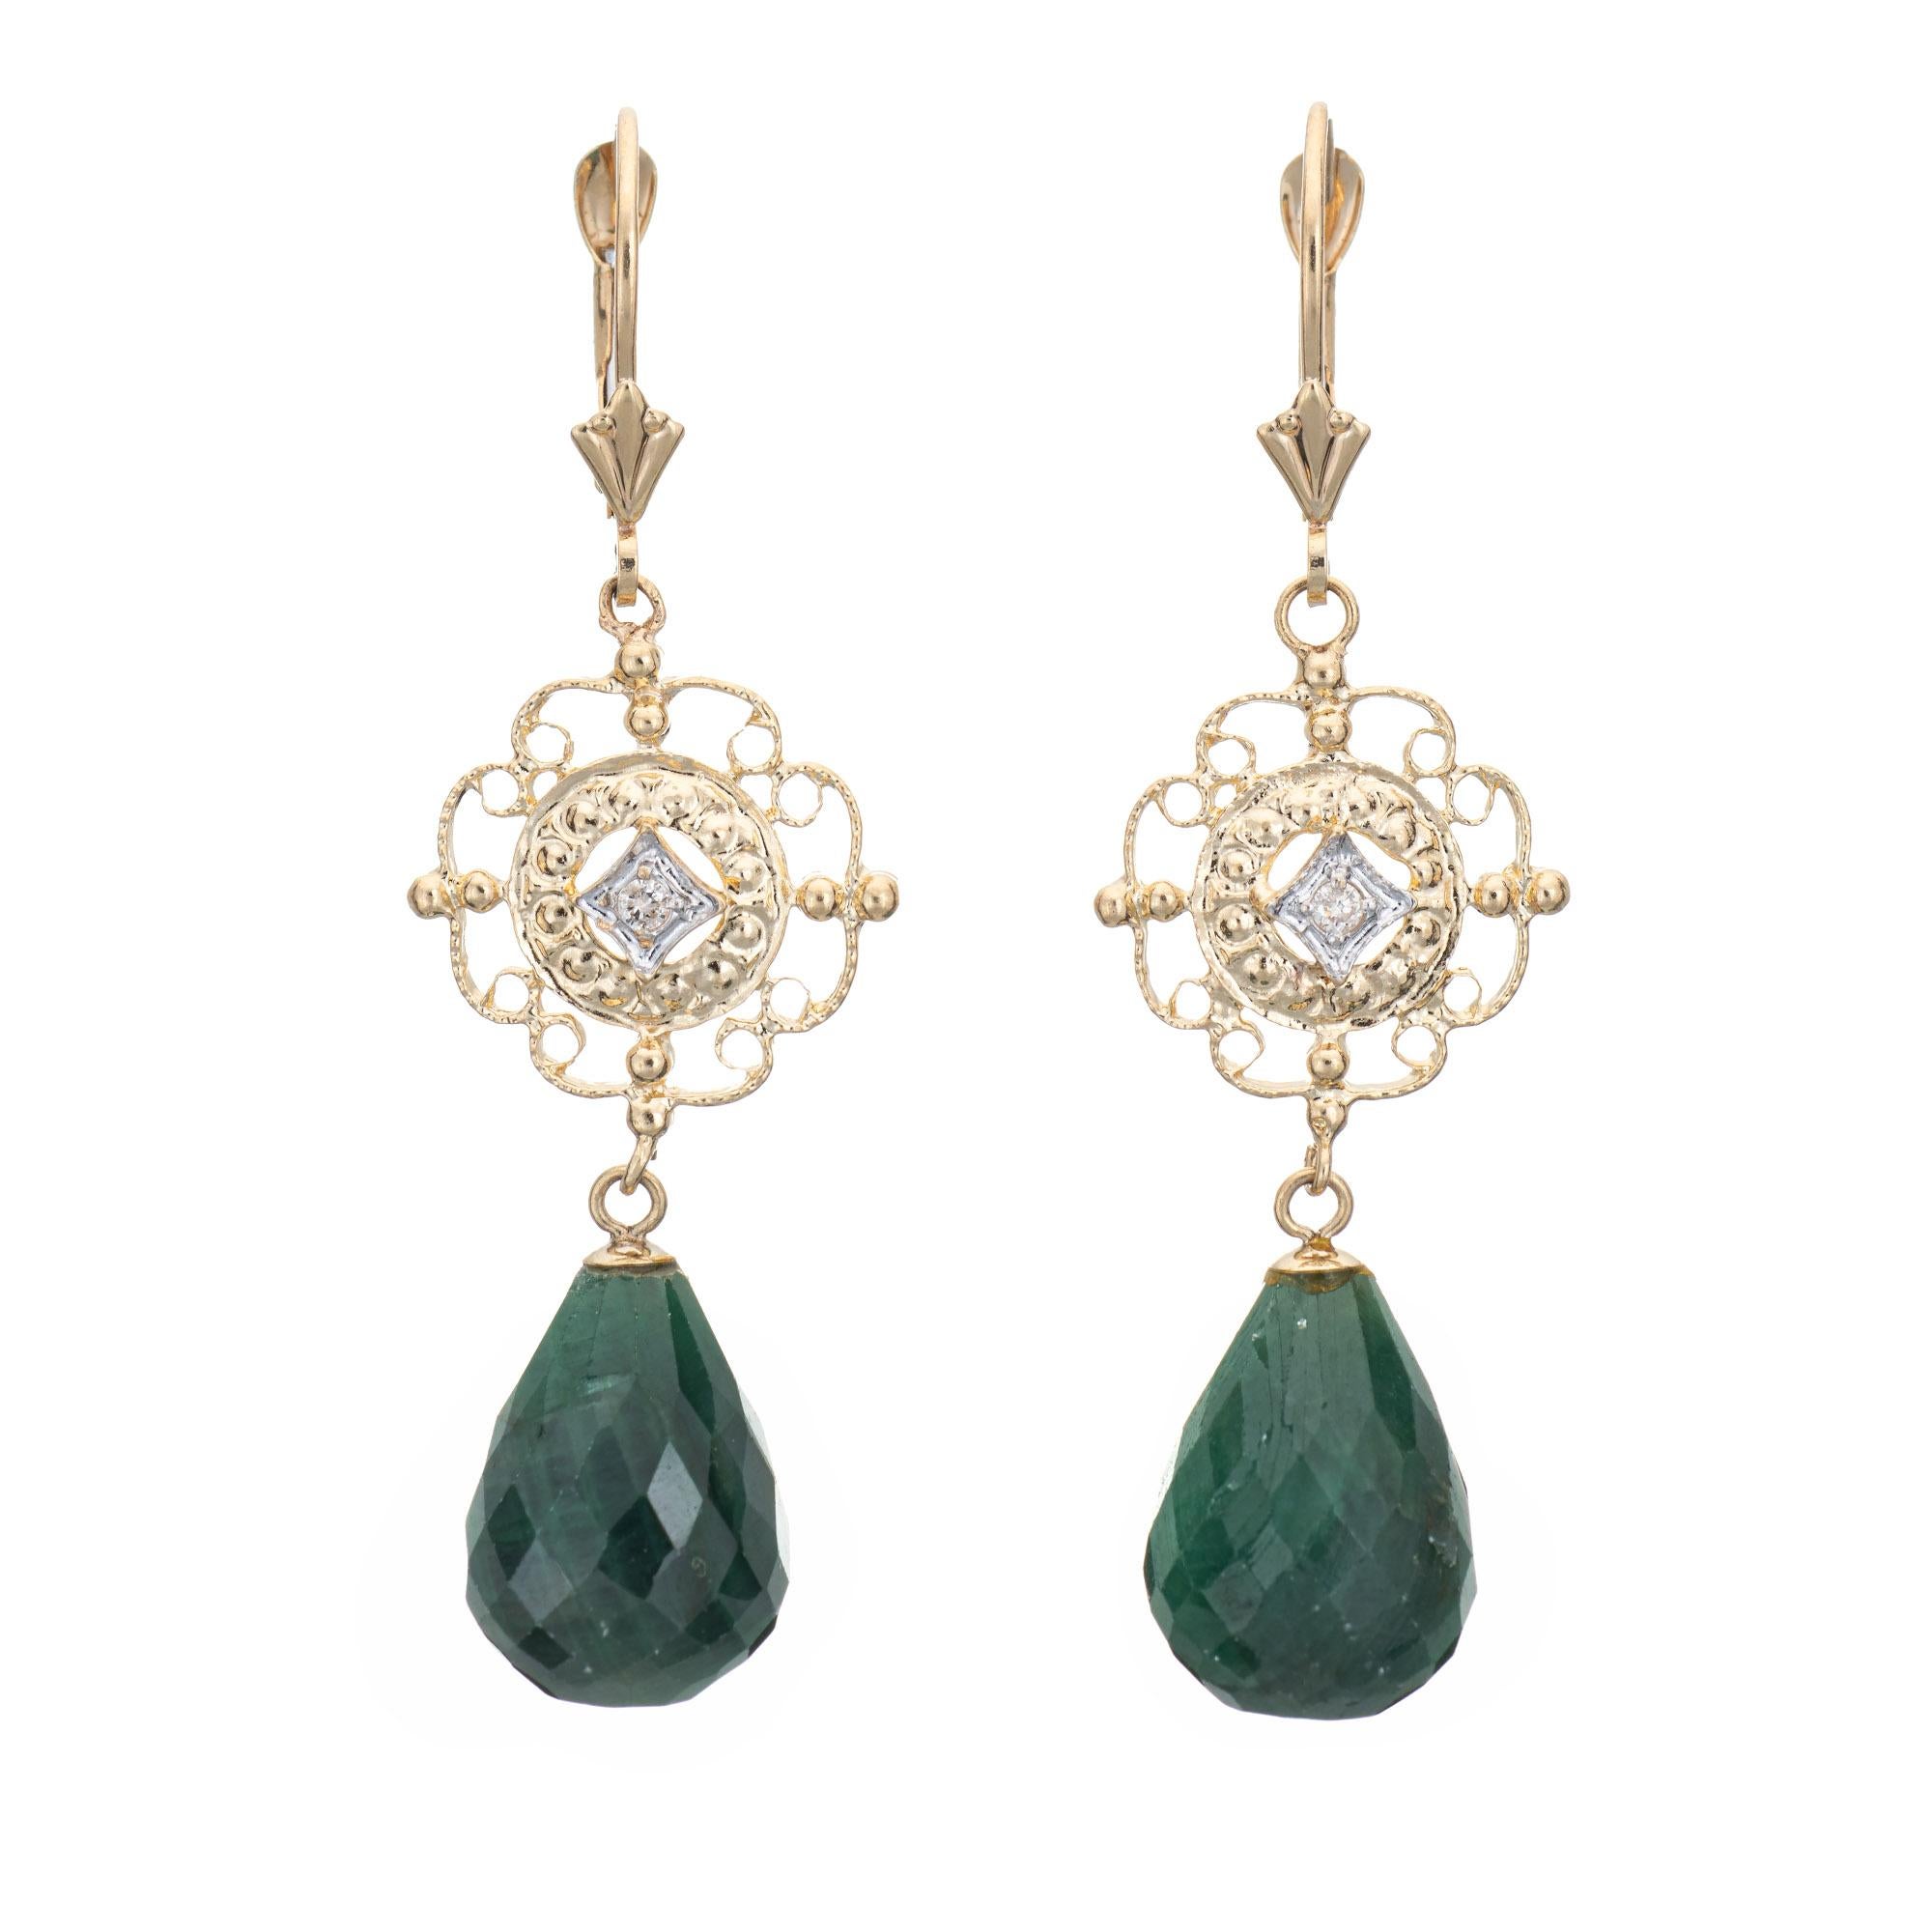 Briolette Cut Briolette Emerald Diamond Earrings Vintage 14k Yellow Gold Drops Estate Jewelry